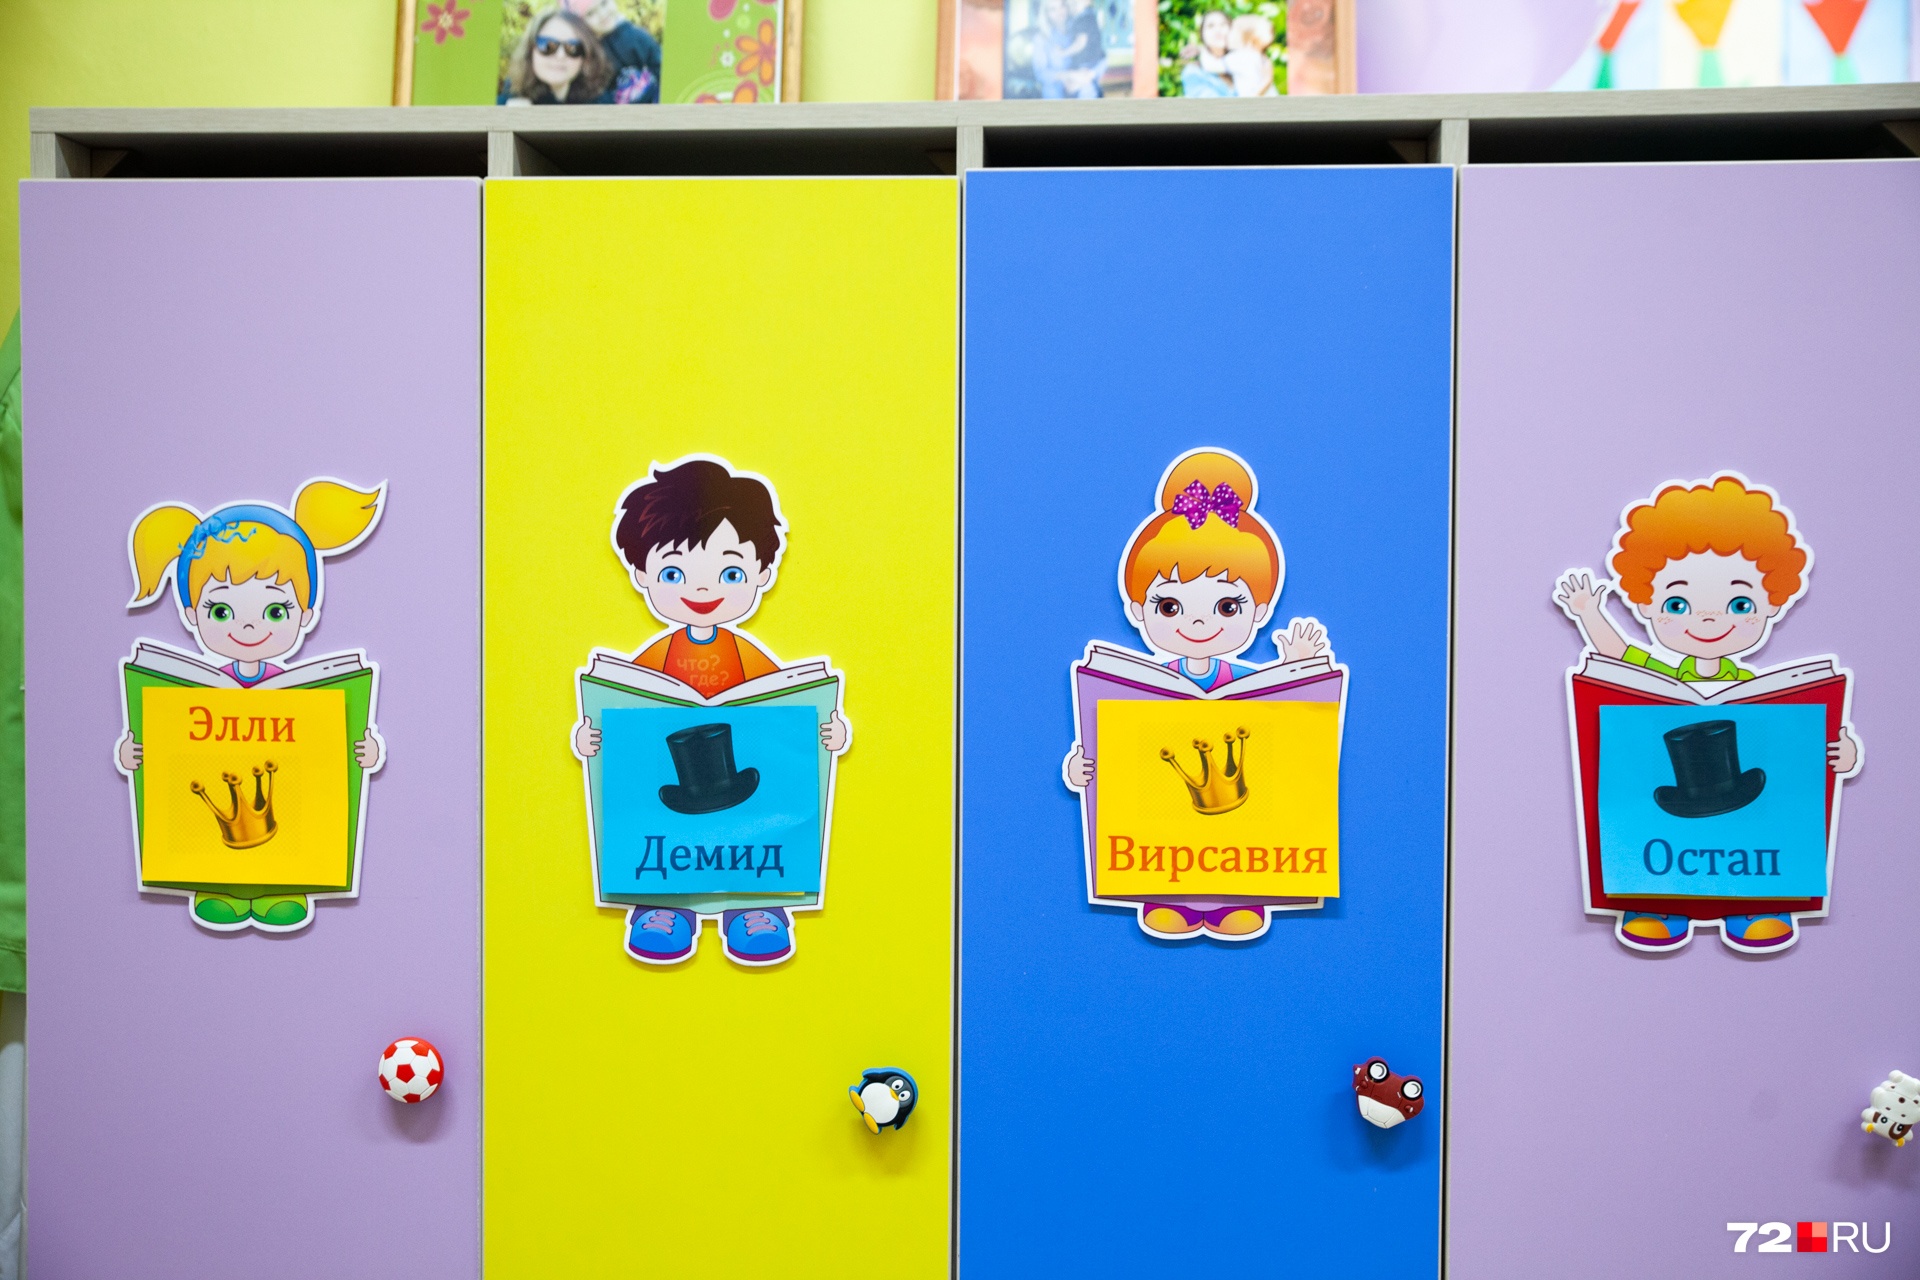 Самый популярный рисунок на шкафчиках в детском саду 100 к одному